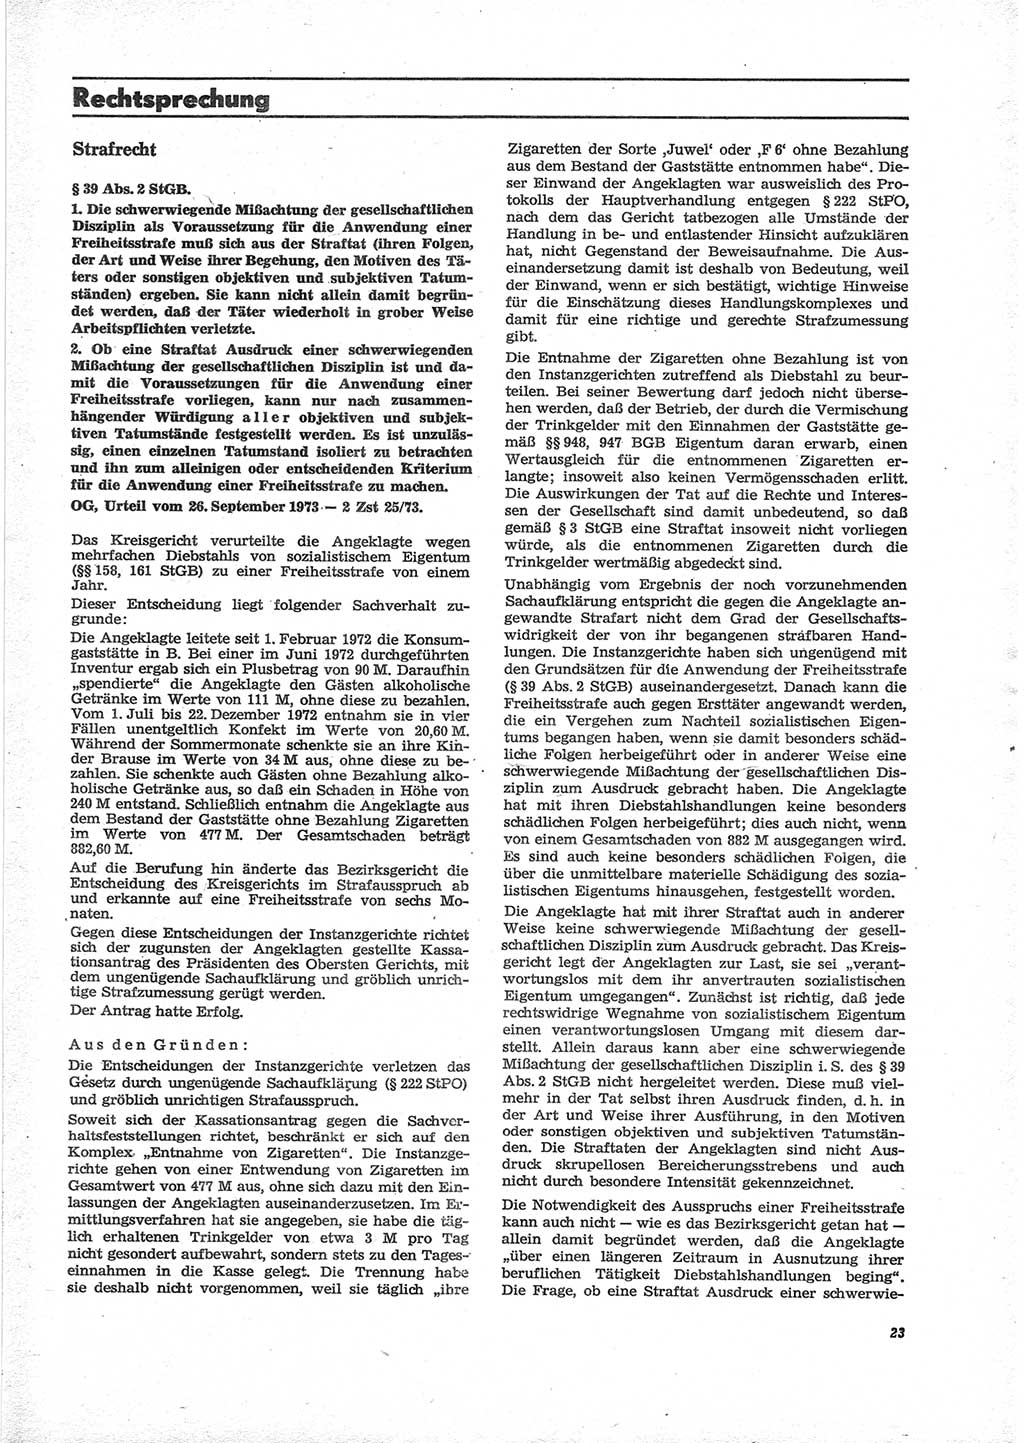 Neue Justiz (NJ), Zeitschrift für Recht und Rechtswissenschaft [Deutsche Demokratische Republik (DDR)], 28. Jahrgang 1974, Seite 23 (NJ DDR 1974, S. 23)